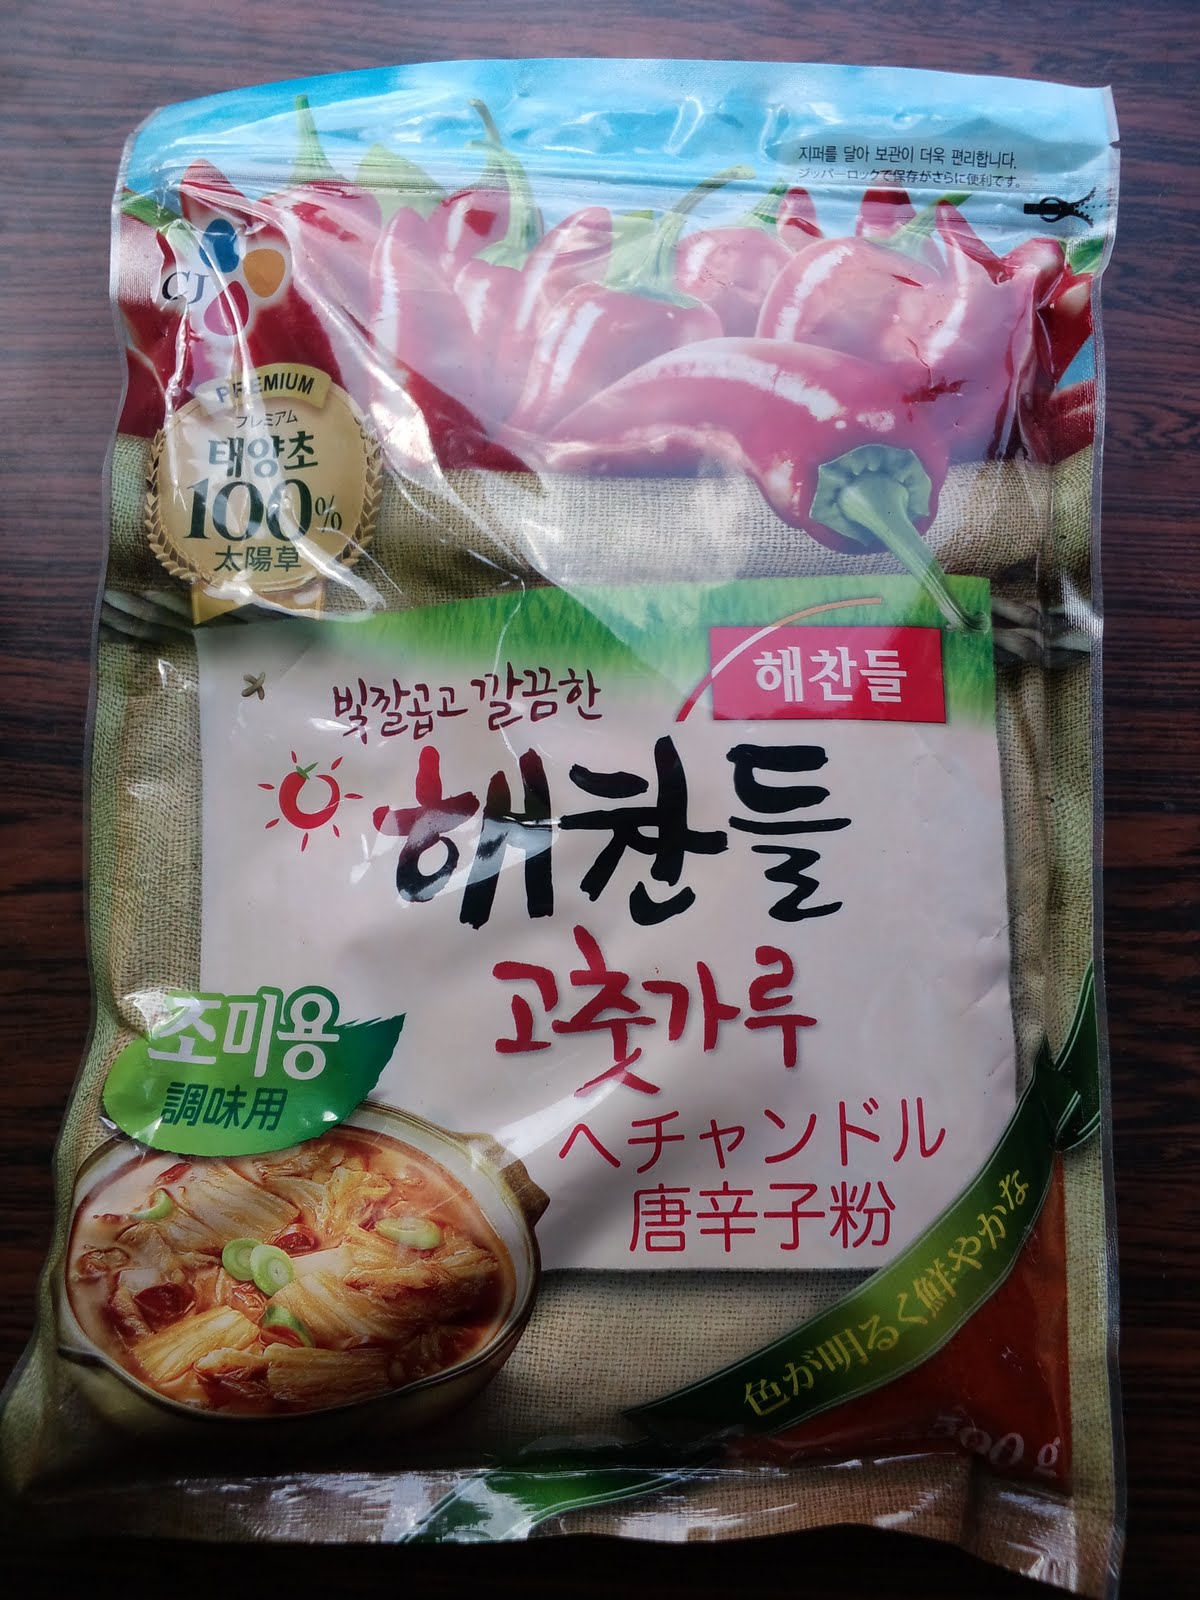 korea: 道の駅ふじおやま韓国食品出店20110823（韓国唐辛子）